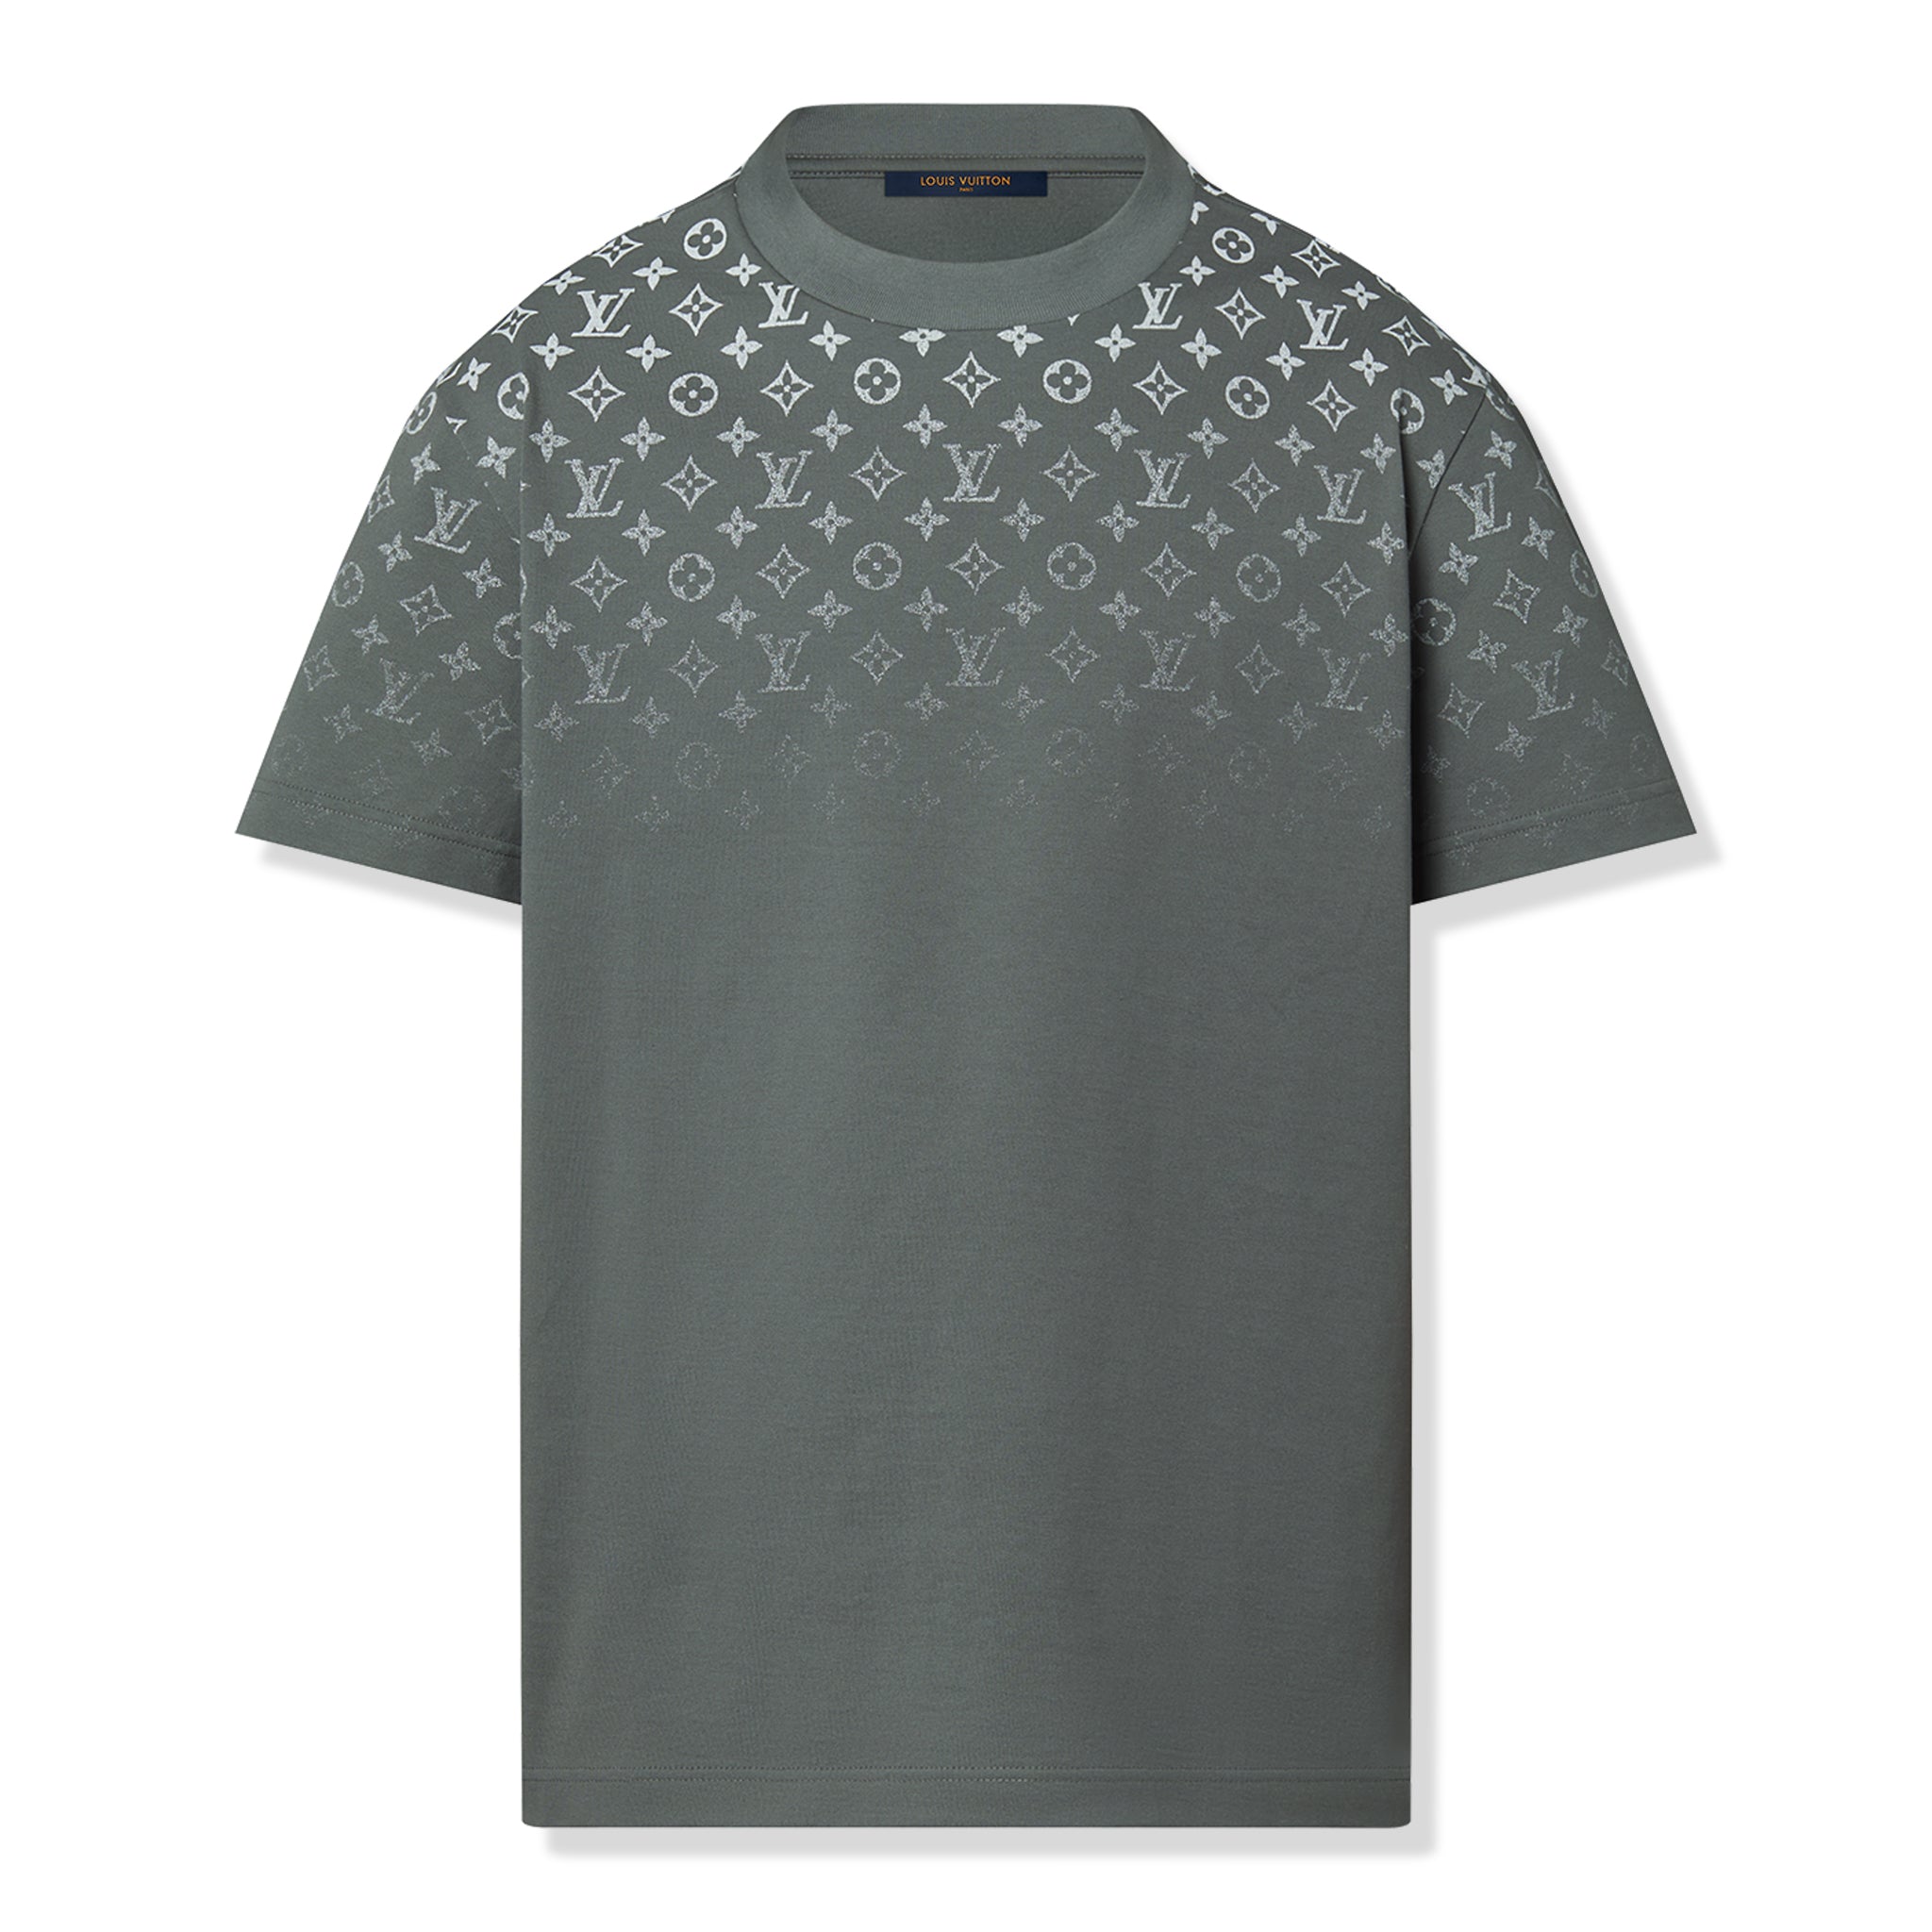 Front view of Louis Vuitton LV Monogram Gradient Cotton Grey T Shirt NVPROD4770027V